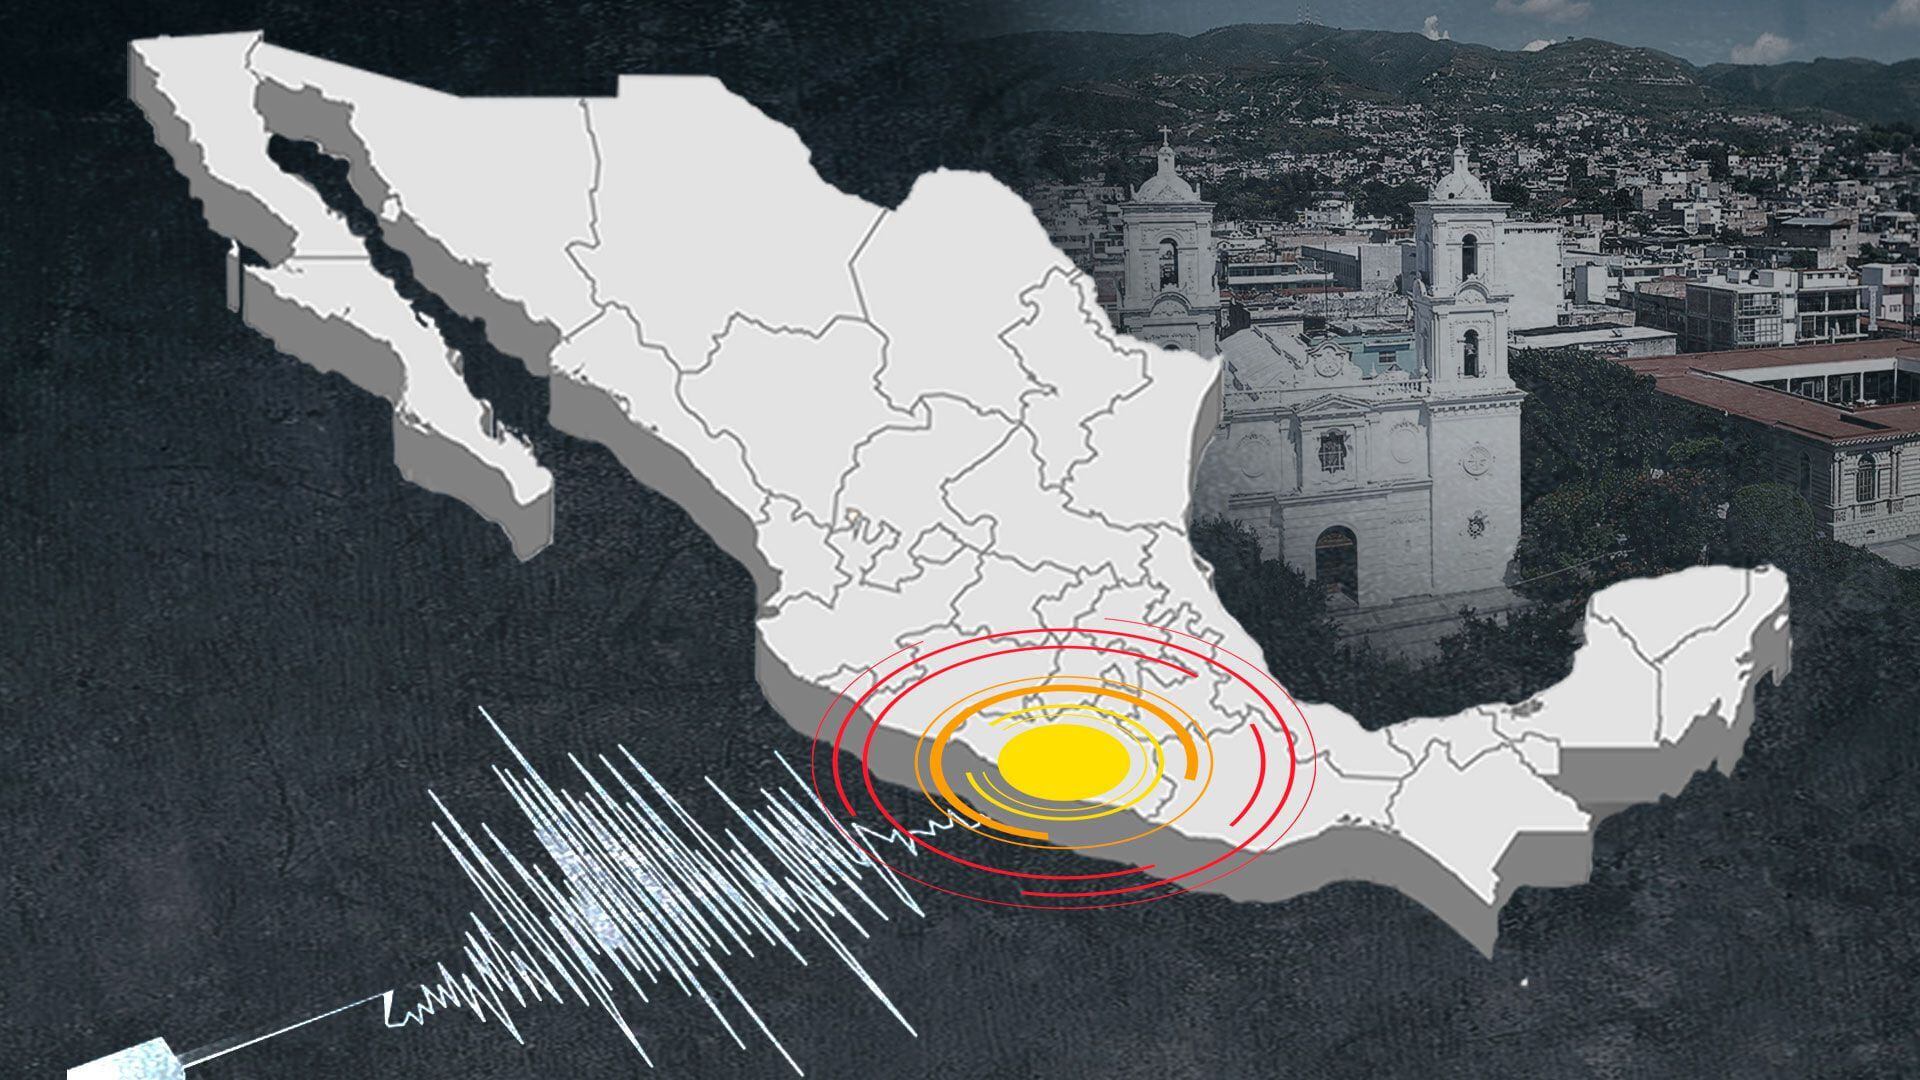 La información preliminar señala que el sismo sucedió en Cd Ixtepec. (Infobae)